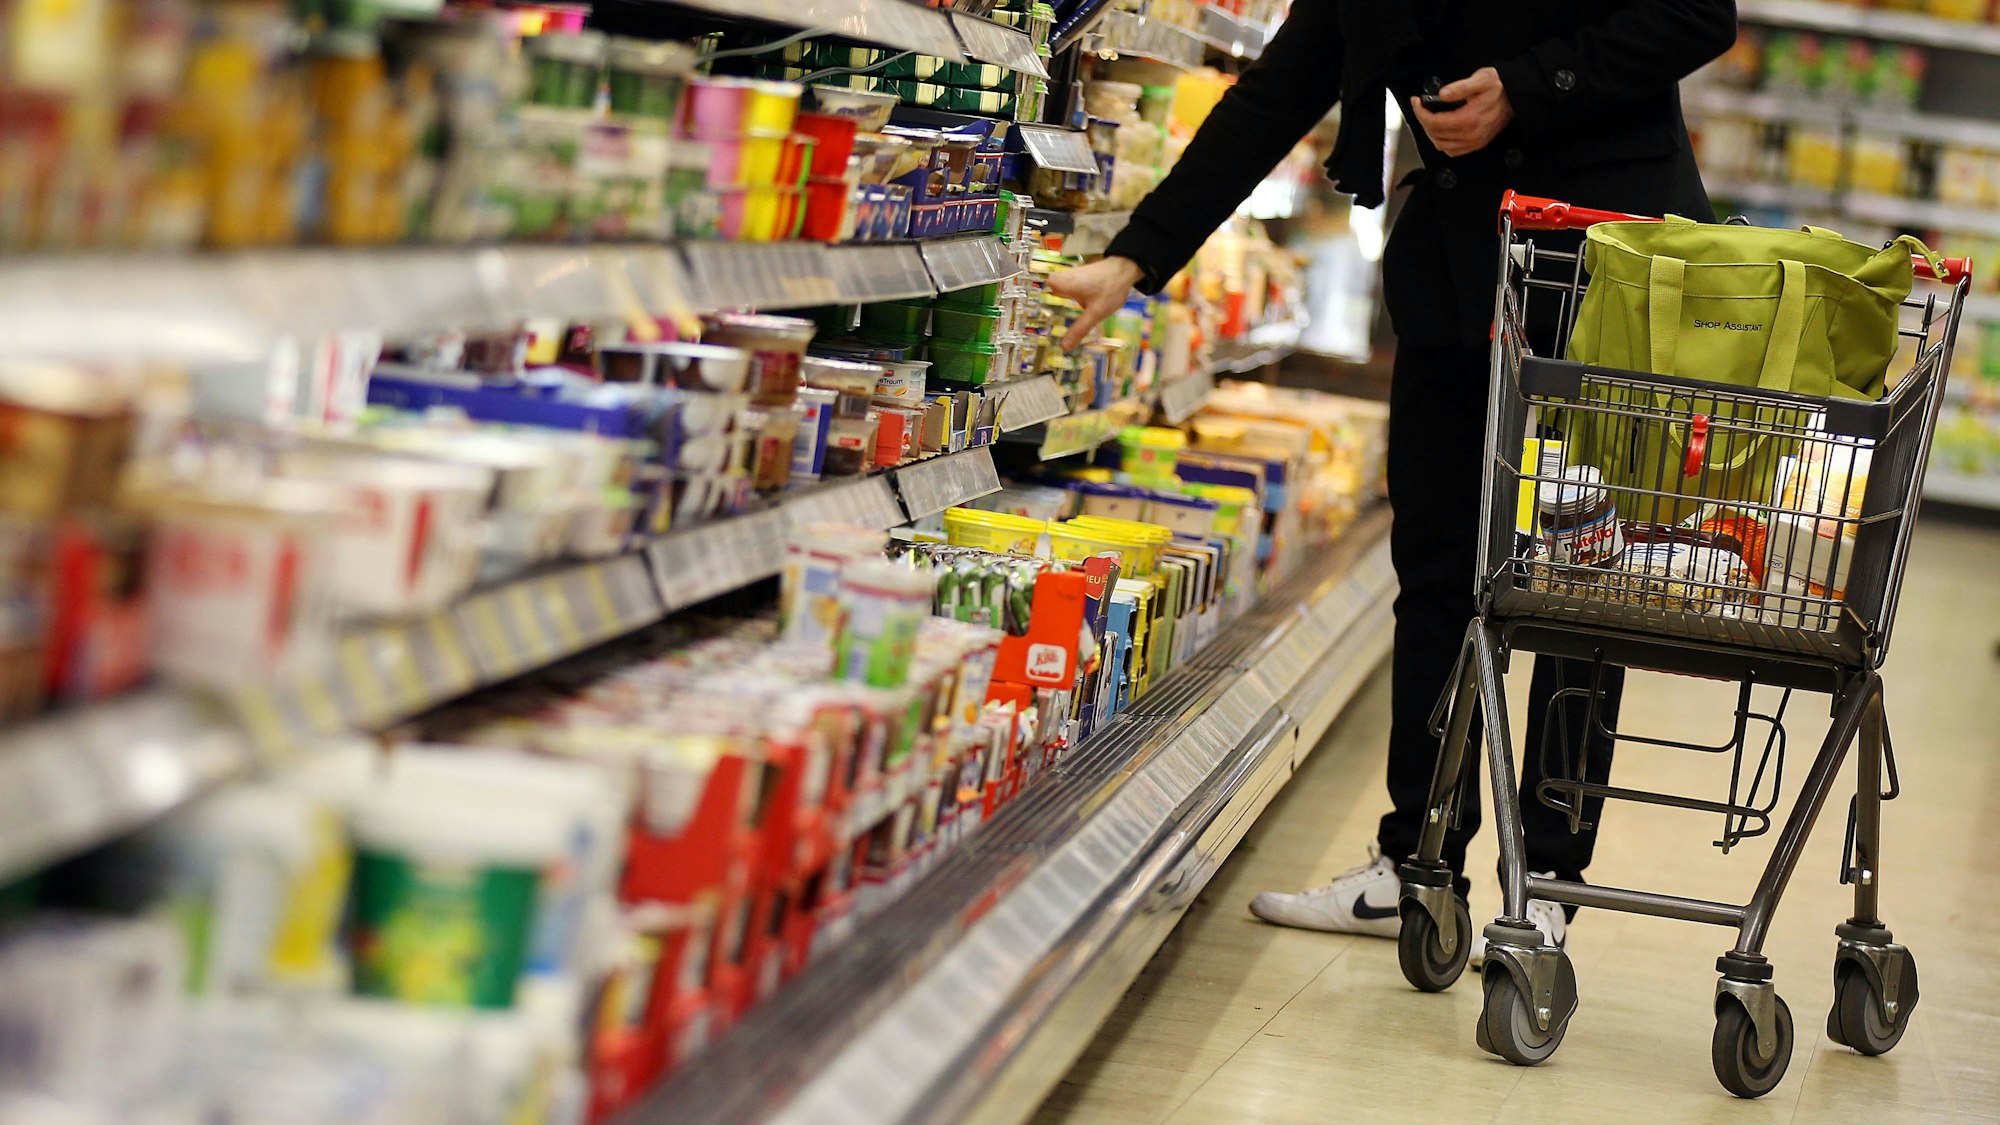 Eine Kunde steht in einem Supermarkt in Köln am Kühlregal und führt einen Einkaufswagen mit sich.